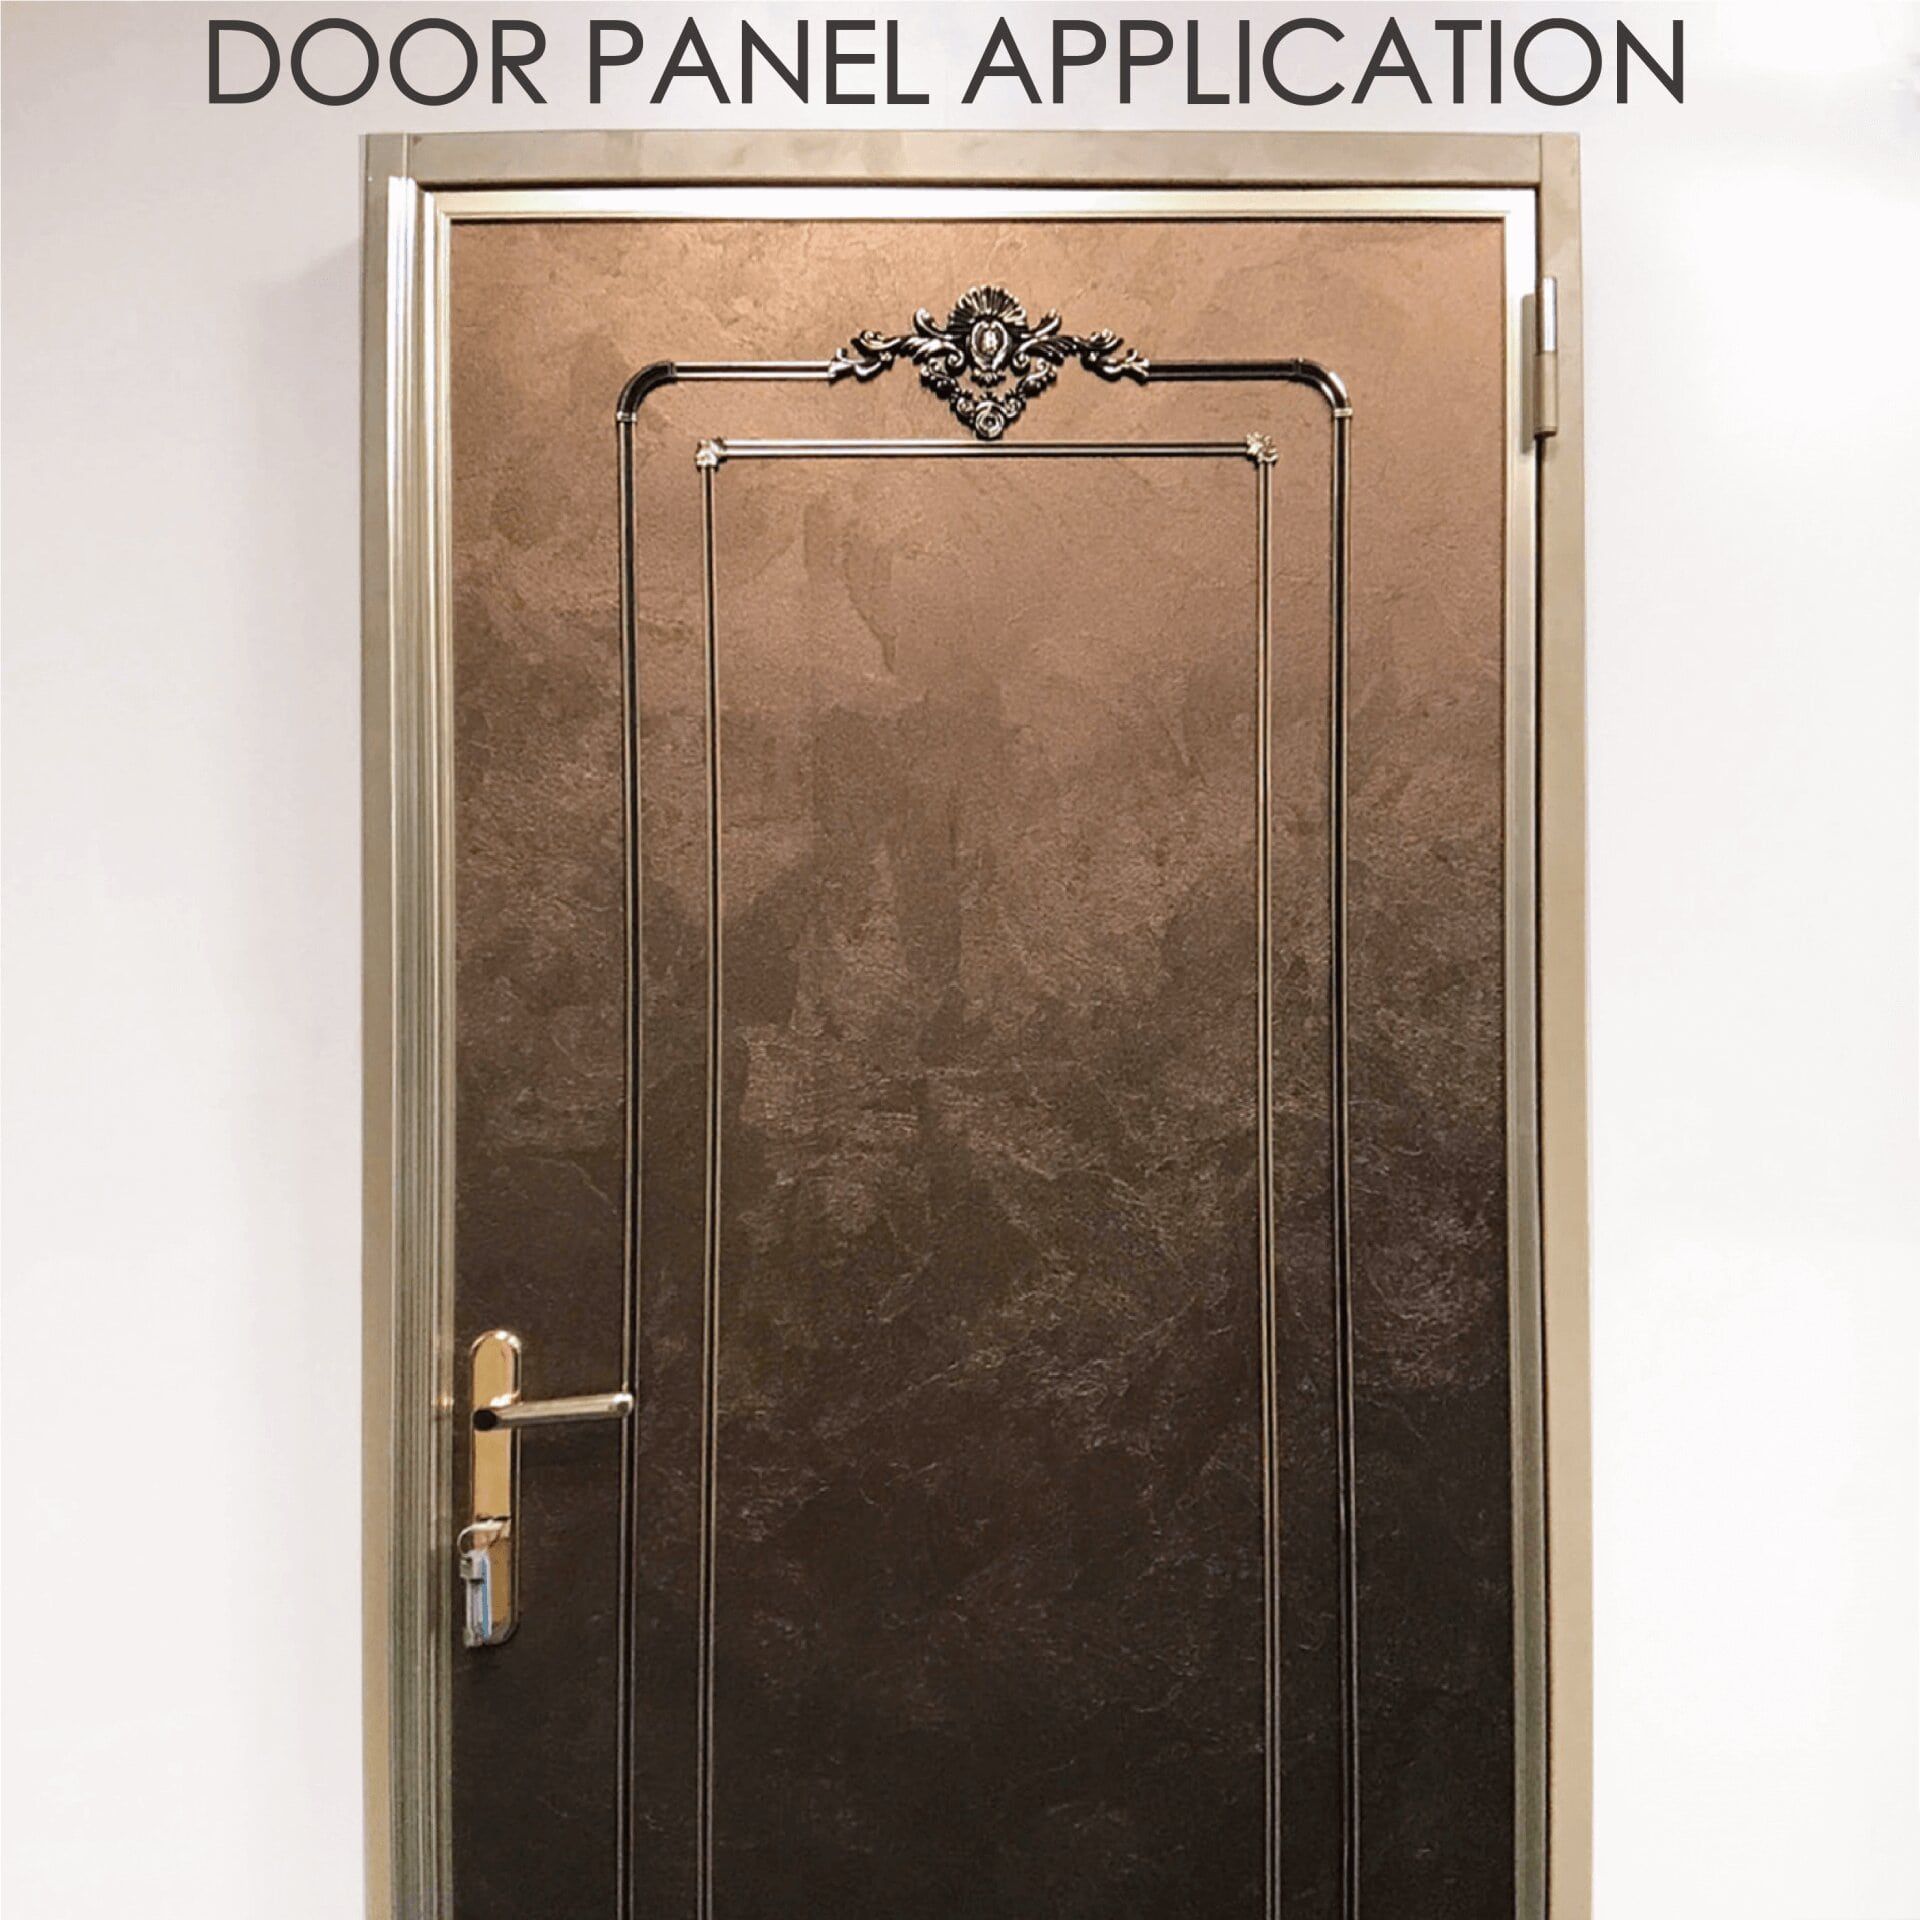 Remplacer une porte en bois par du métal laminé peut augmenter la sécurité et la durabilité.